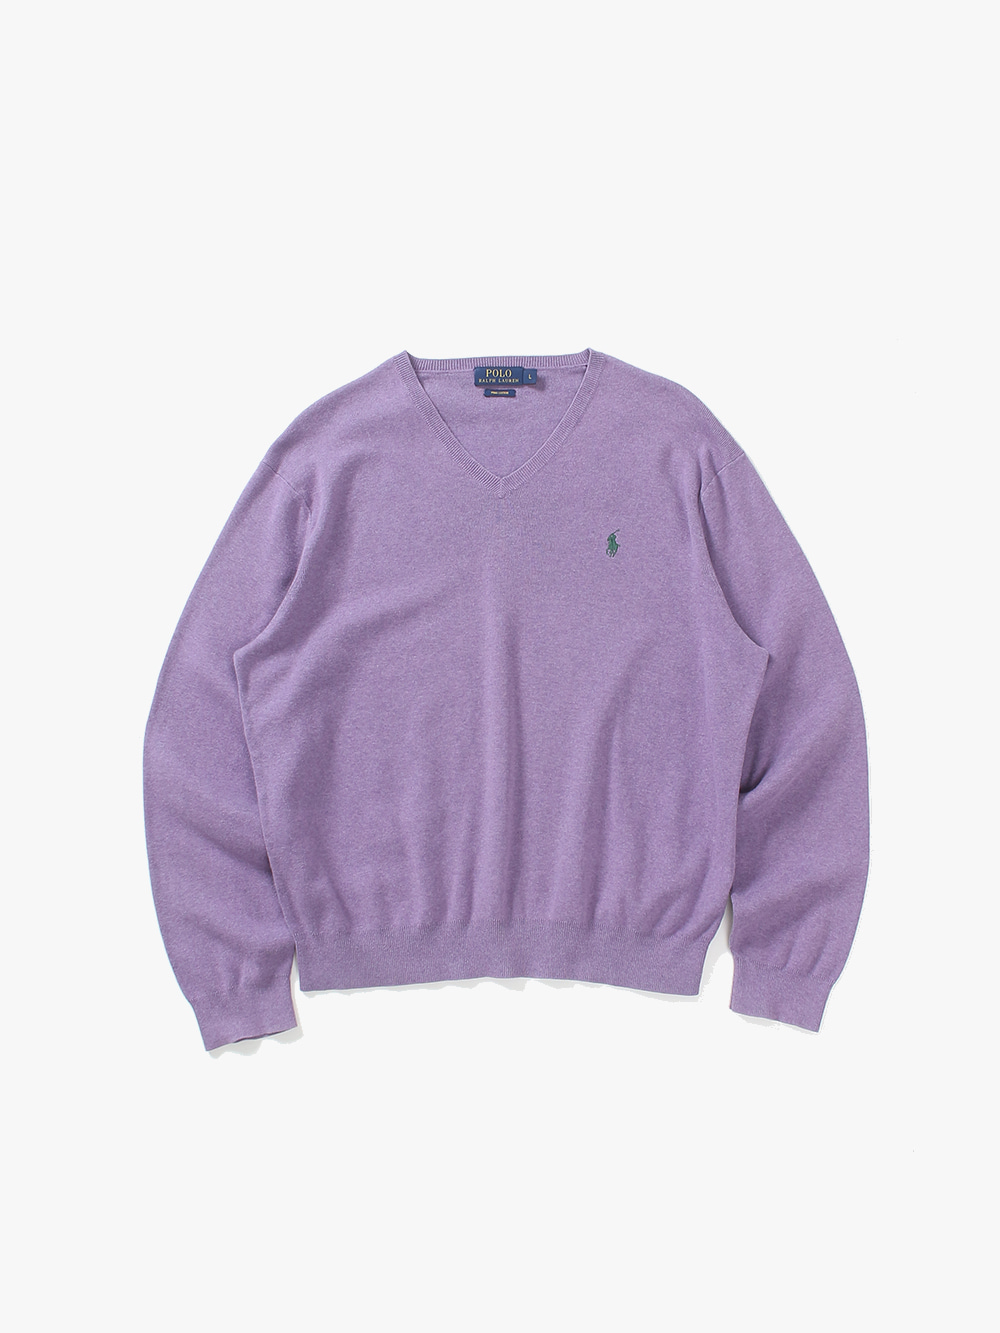 [ L ] Polo Ralph Lauren Sweater (6388)